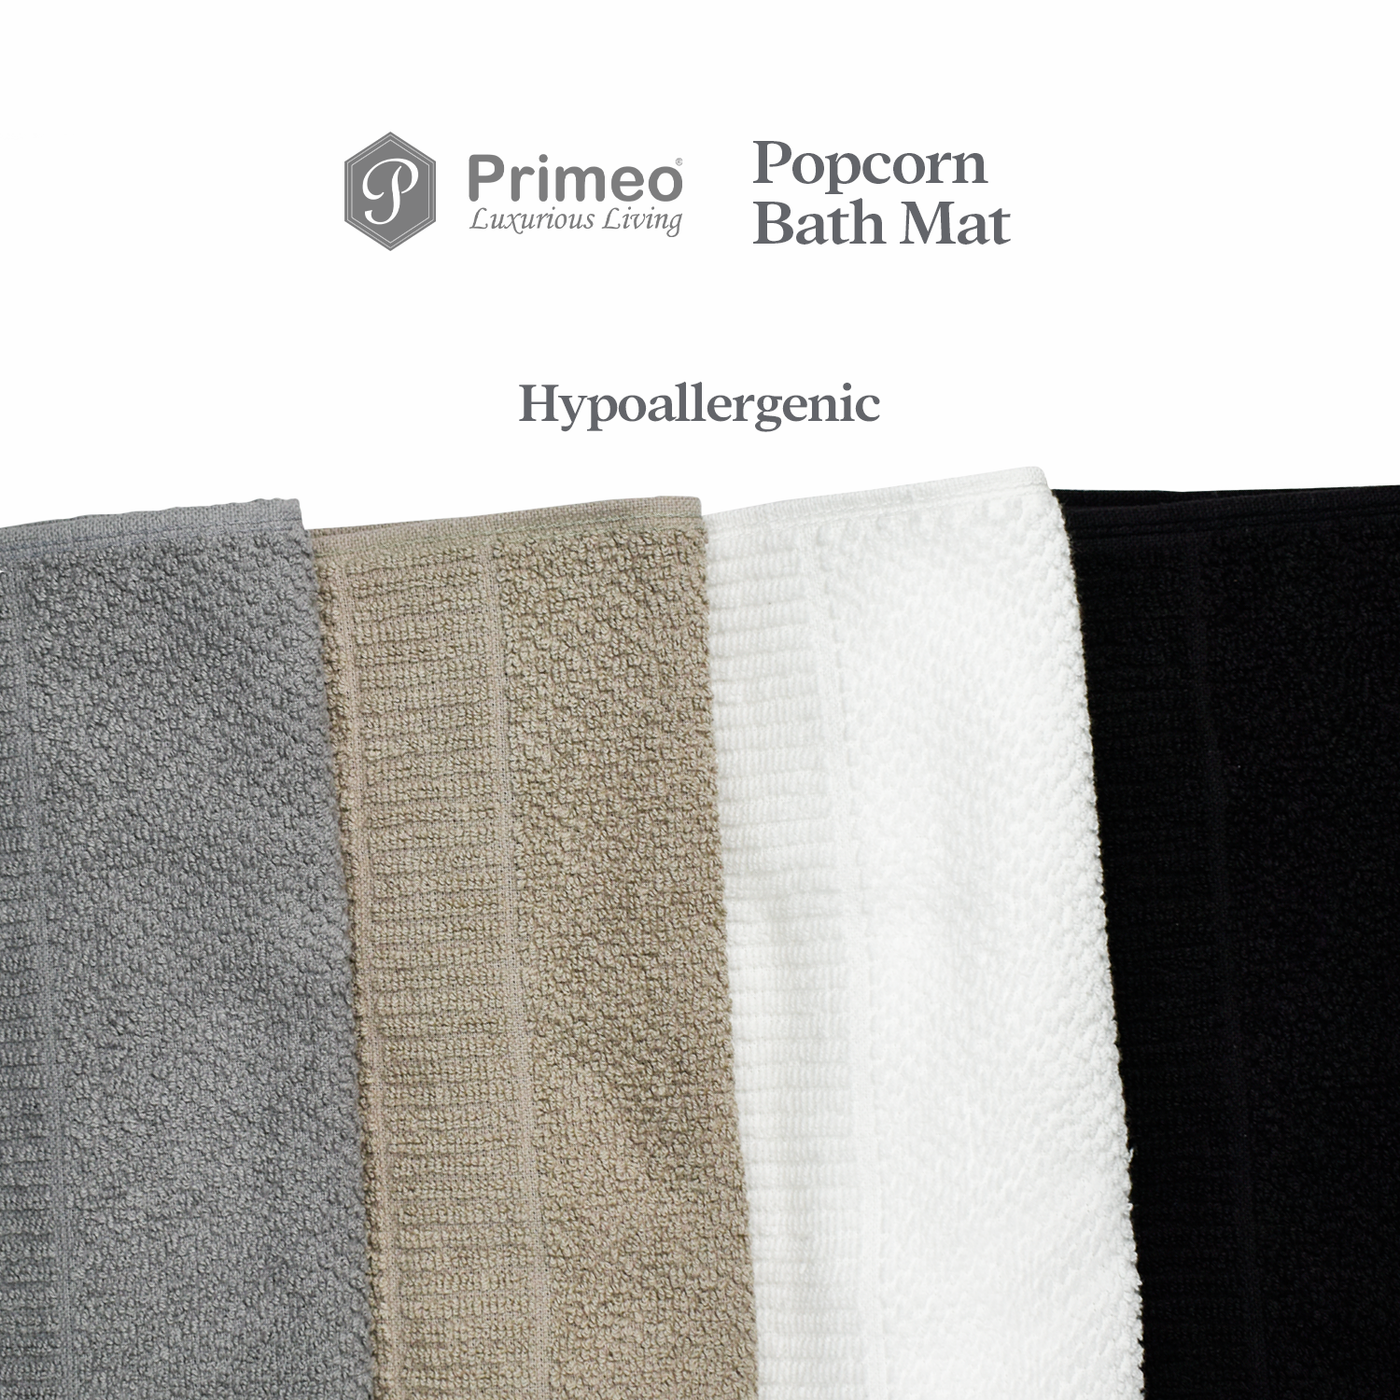 Primeo 100% Cotton Bath Mat - Popcorn Weave Collection Towels